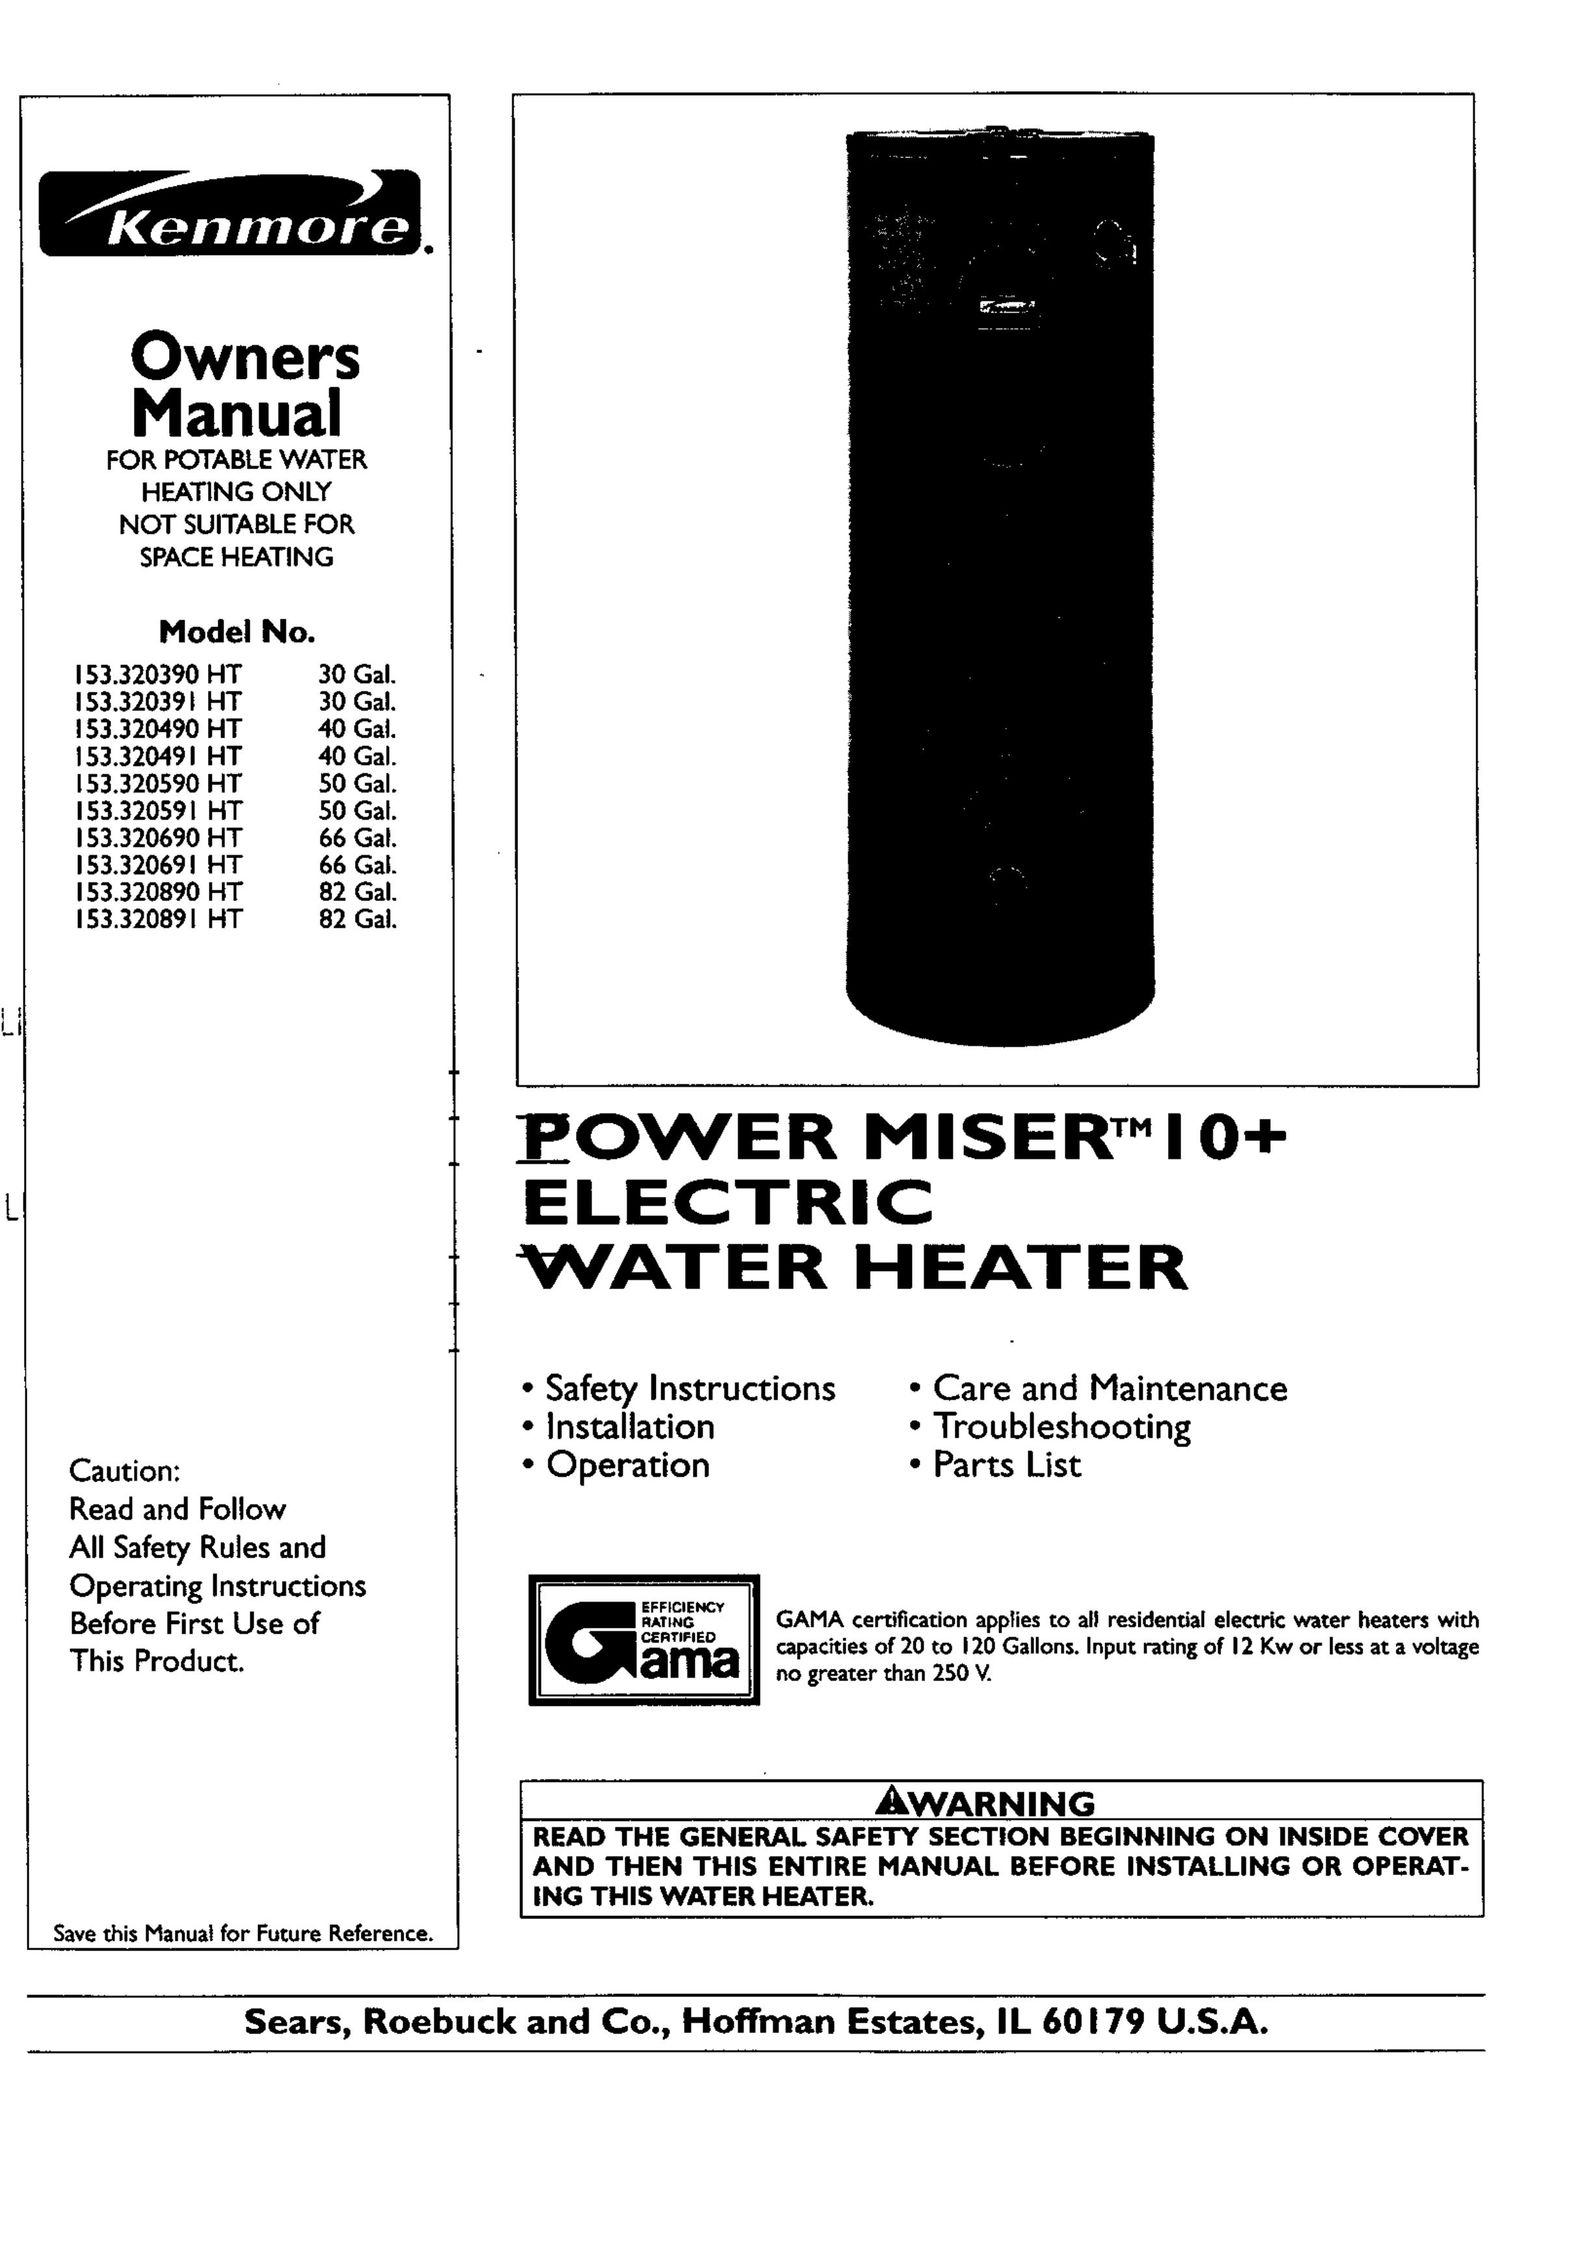 Kenmore 153.320690 HT 66 GAL Water Heater User Manual